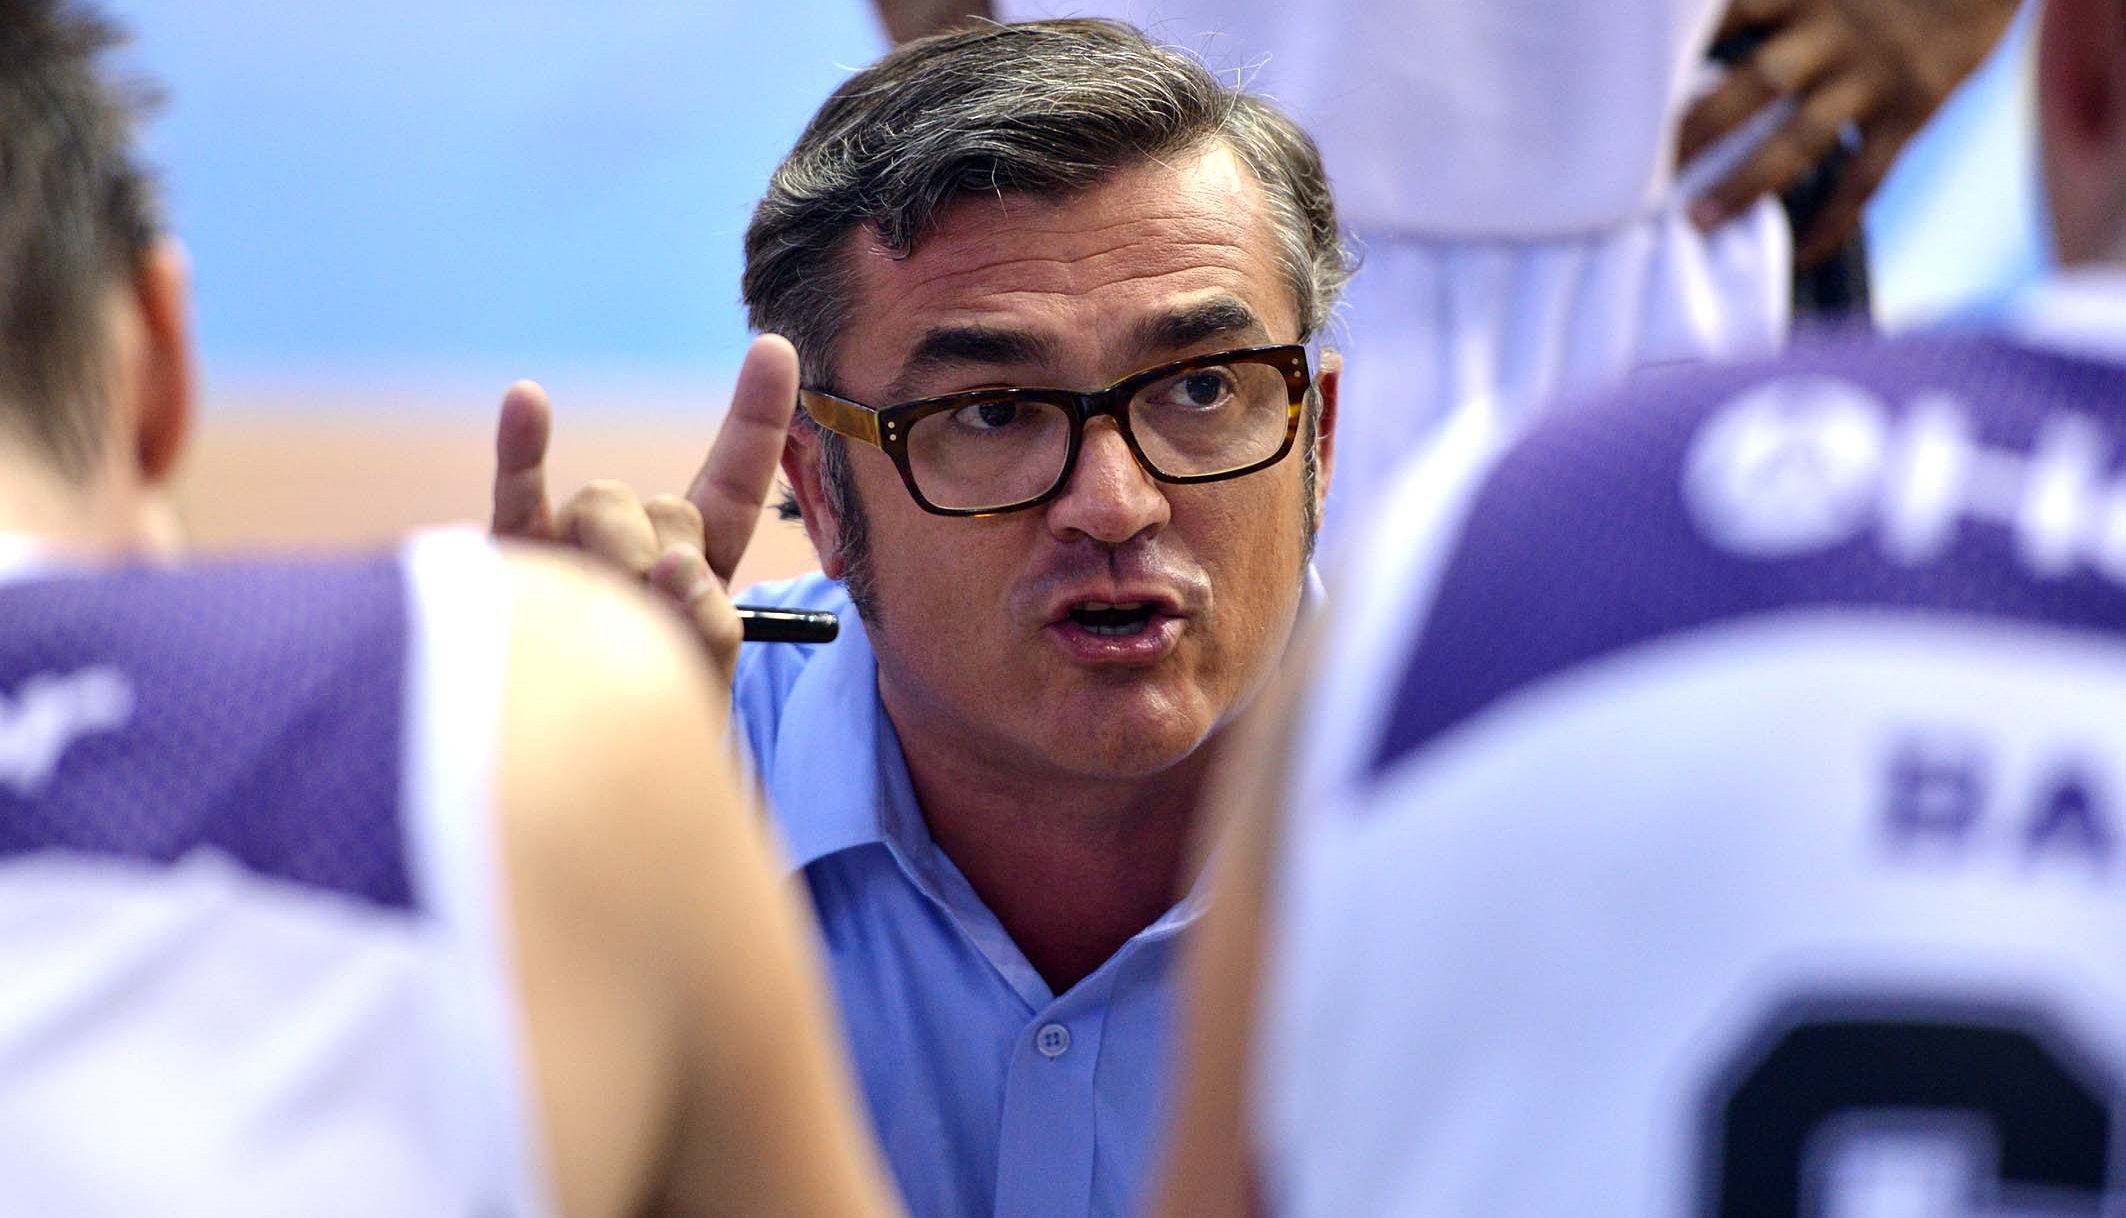 Paco García ocupa o cargo de treinador do Mogi desde o início da última temporada (João Pires/LNB)